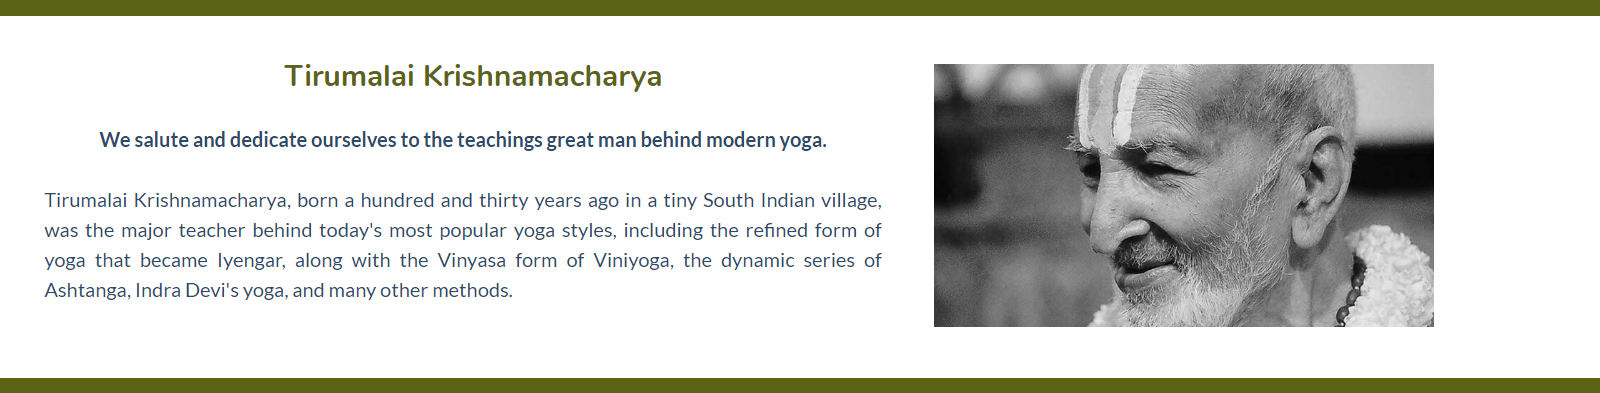 Tirumalai Krishnamacharya Yoga Kerala